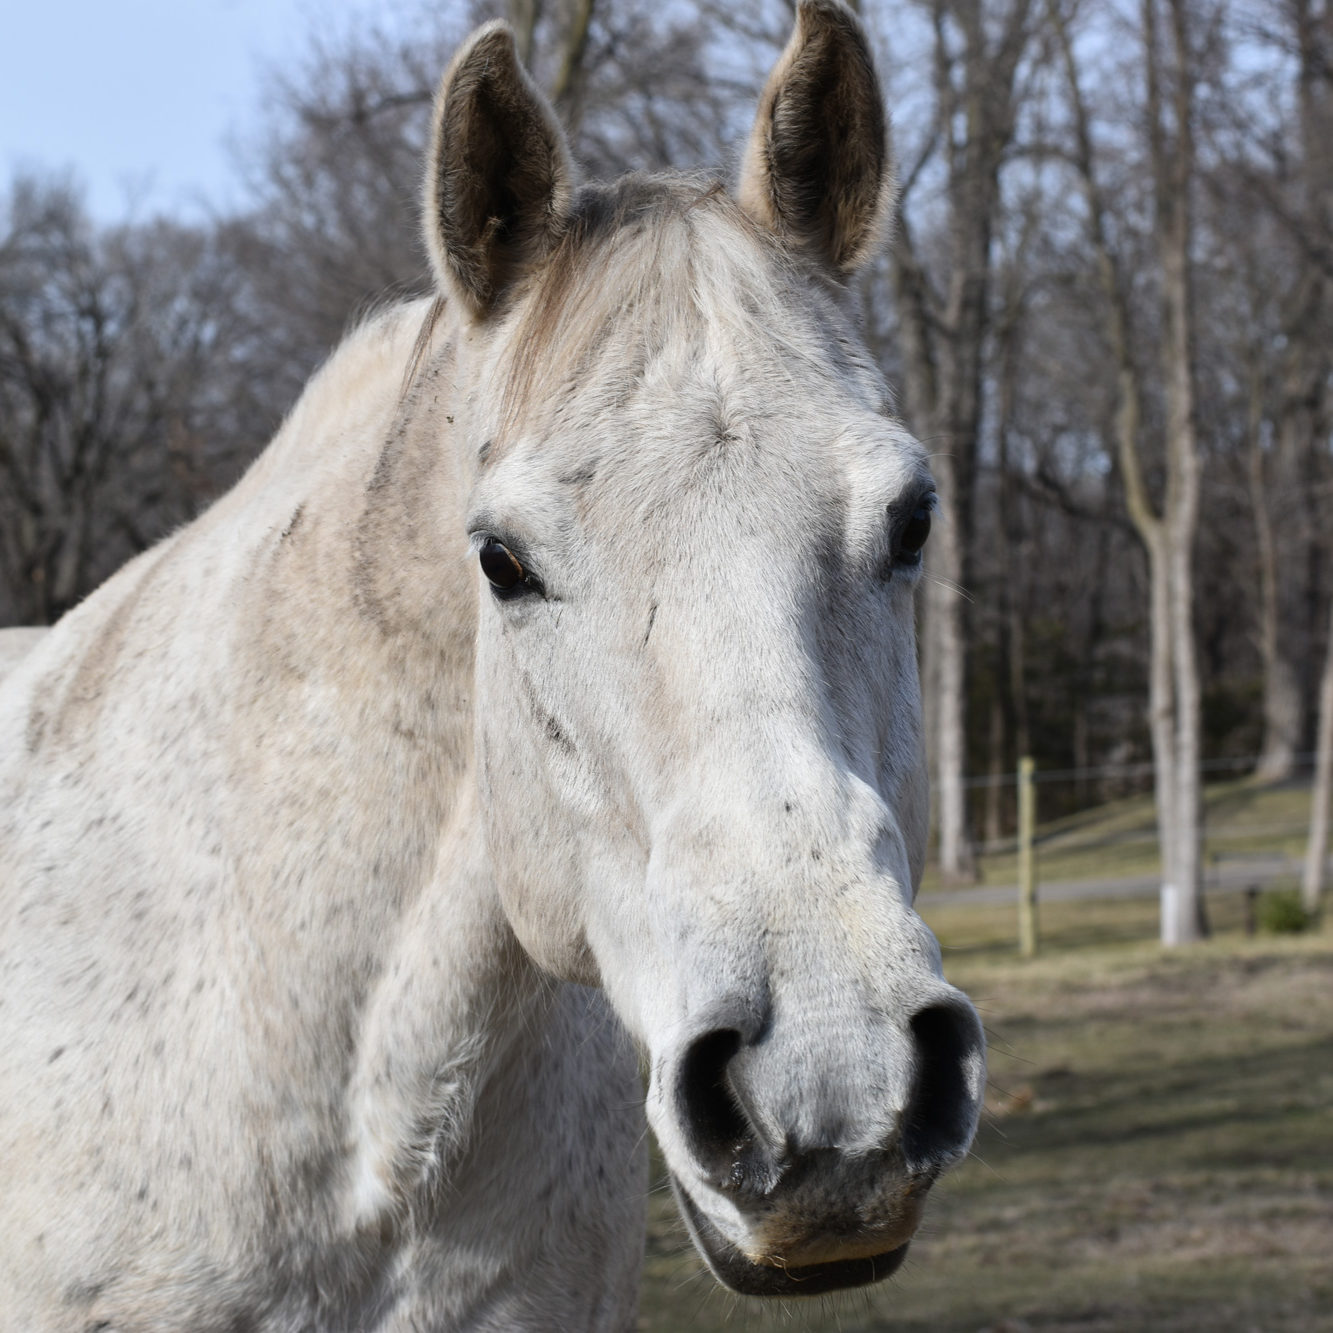 Zaria, a white mare on Innis Free Farm.